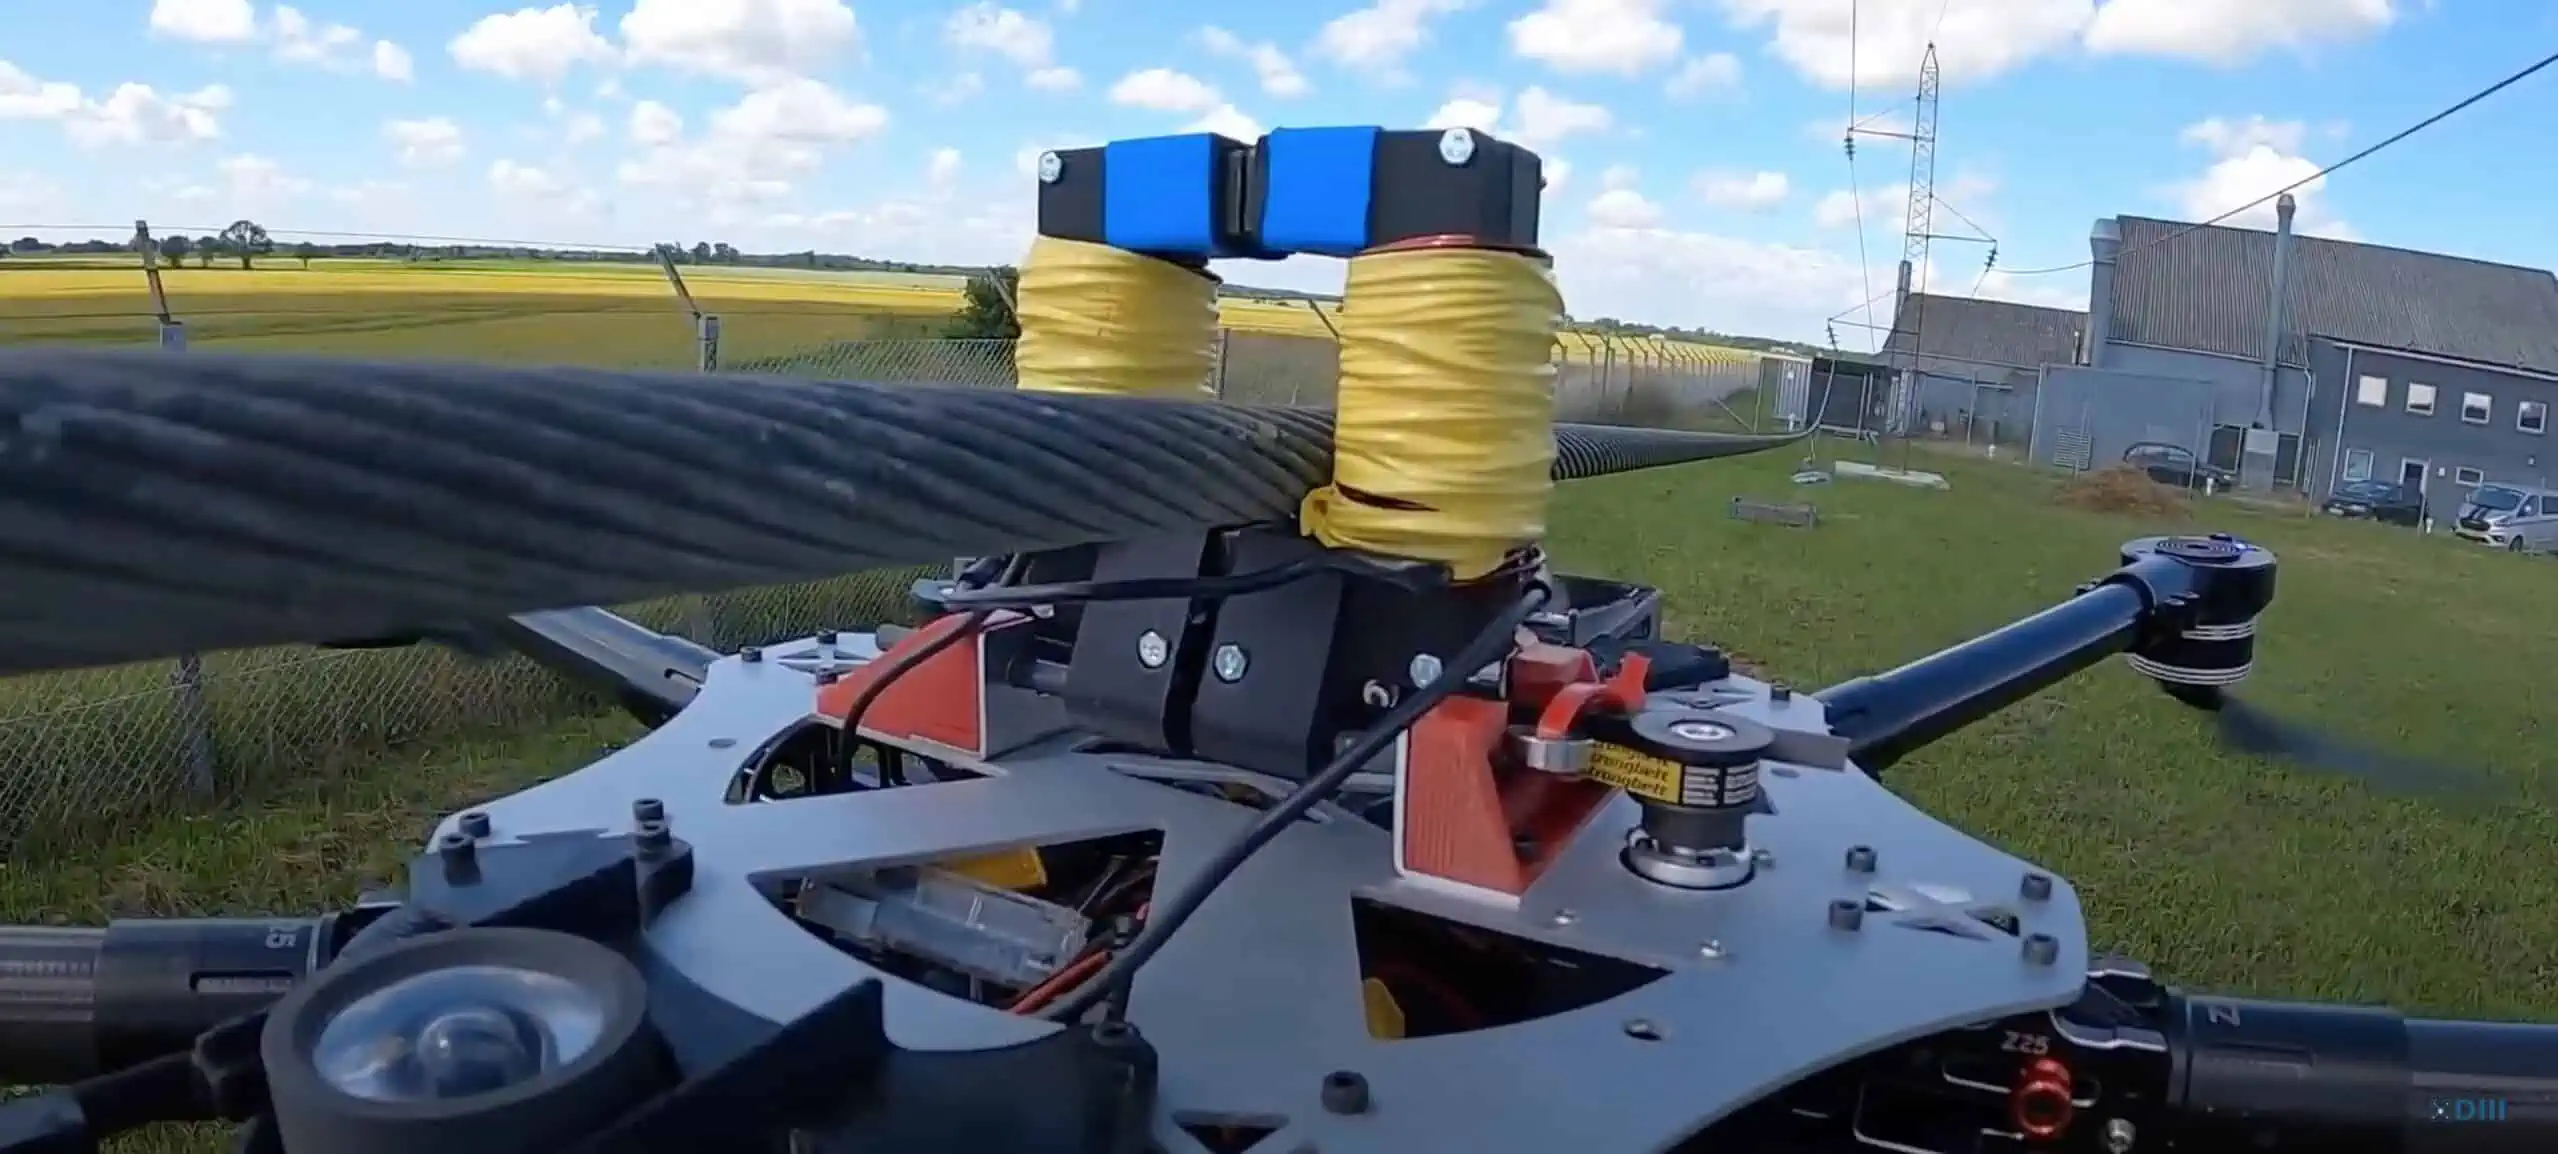 Ricarica batterie droni innovativa in Danimarca